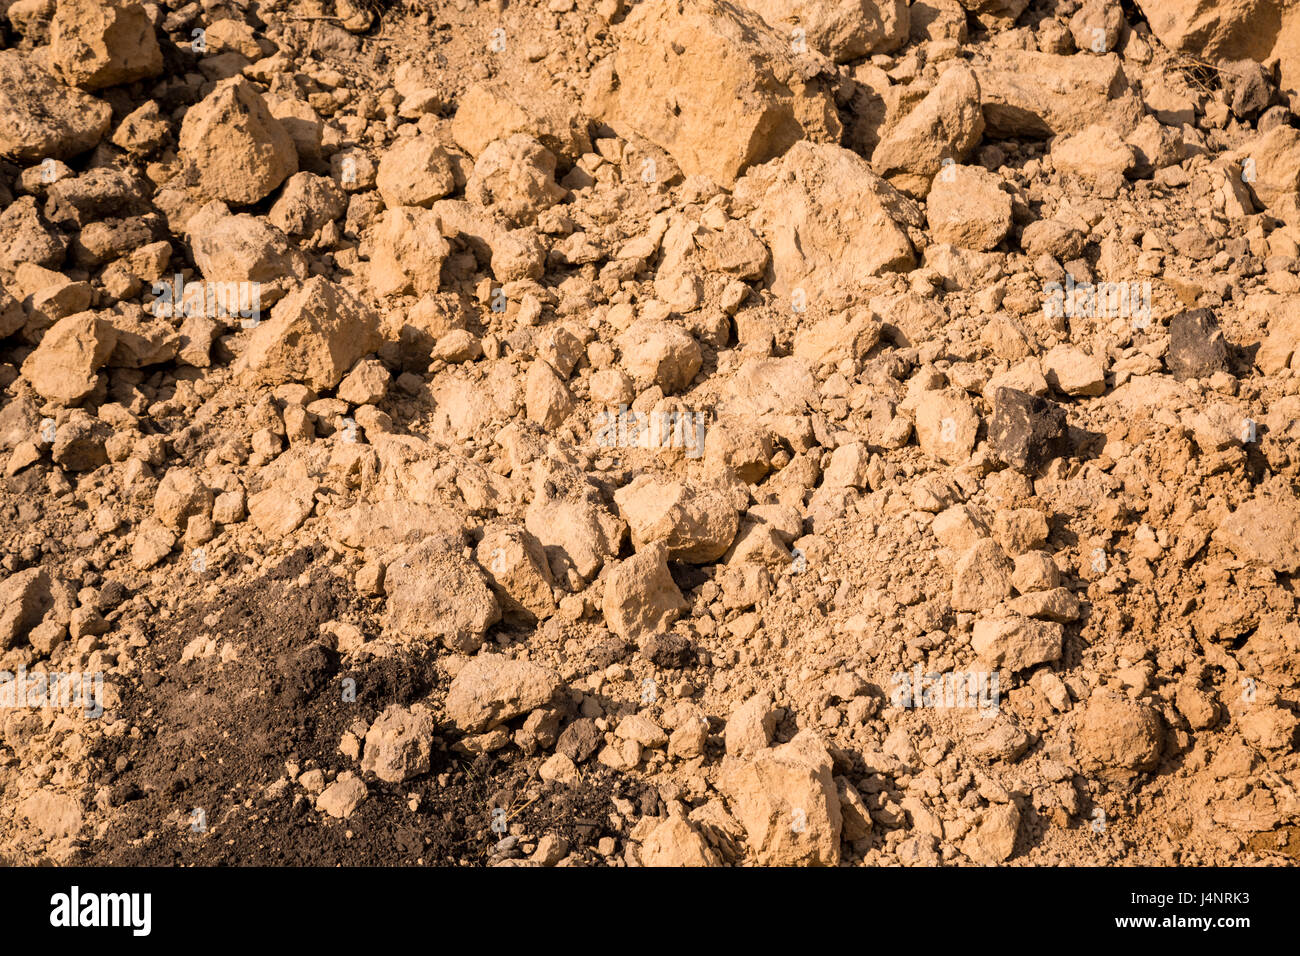 Di argilla e sabbia nella cava. Bellissimo sfondo insolito simile alla superficie del pianeta Marte o la luna Foto Stock